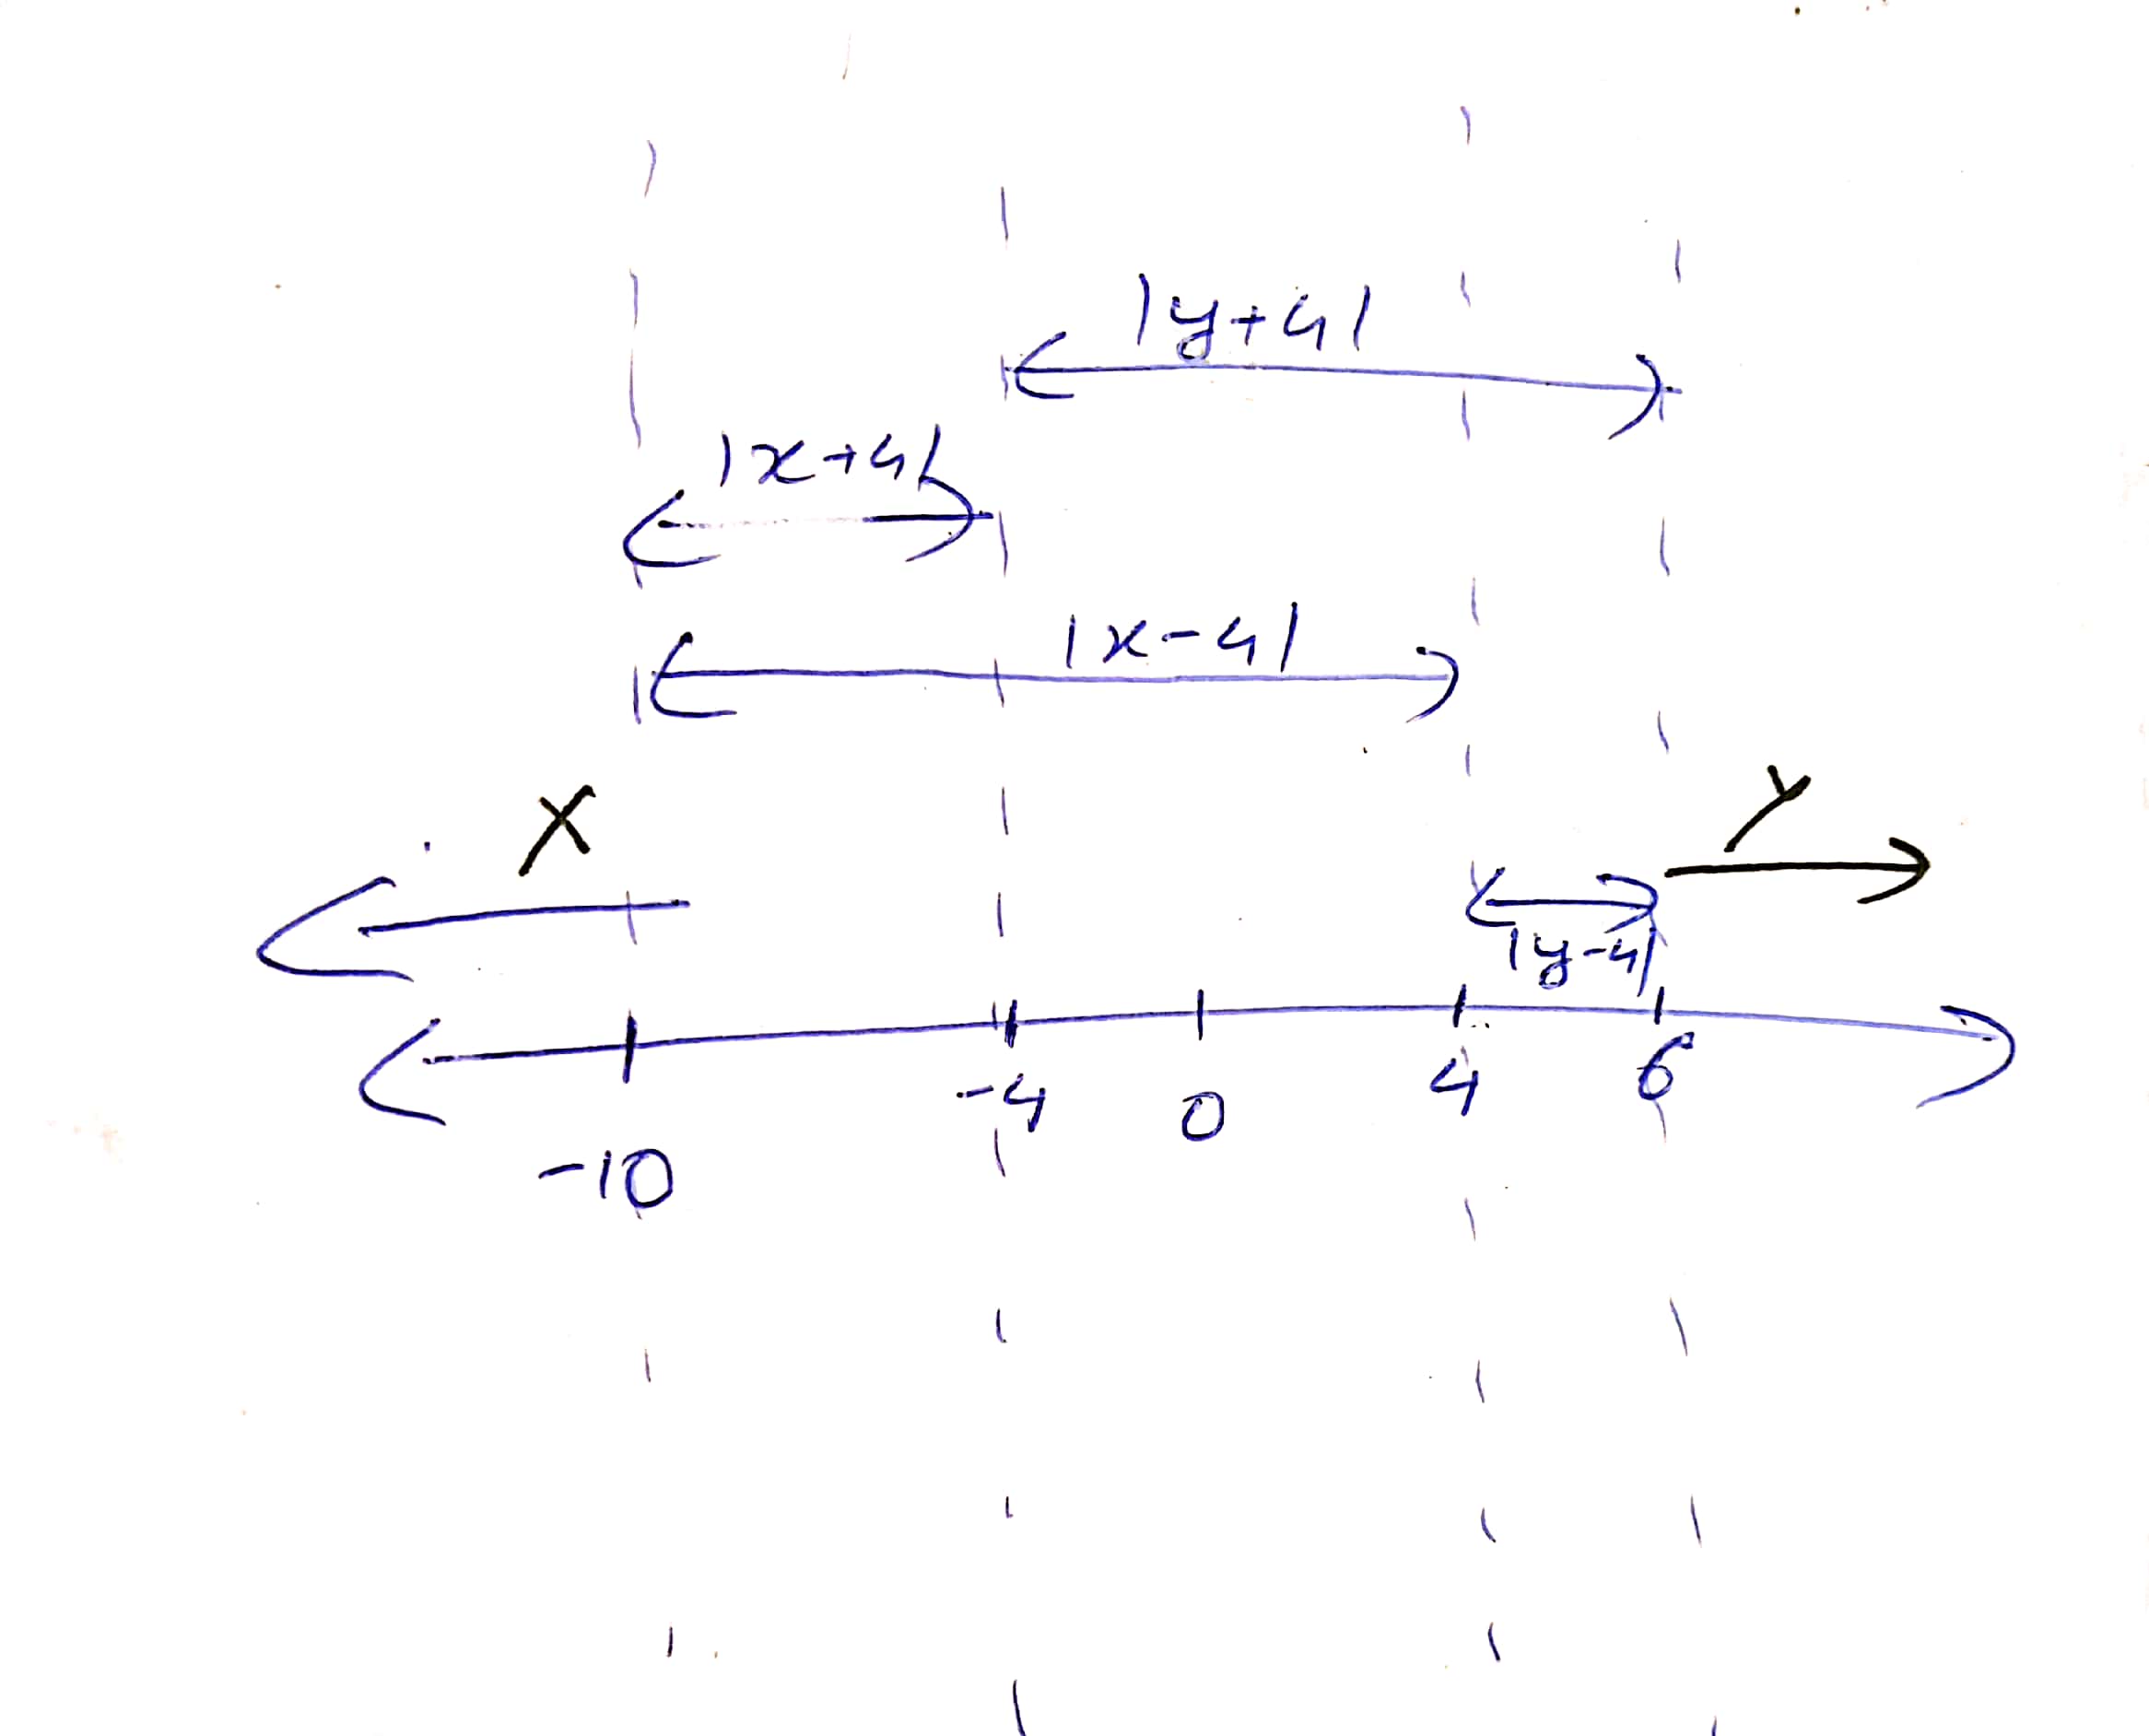 Number line solution diagram.jpg